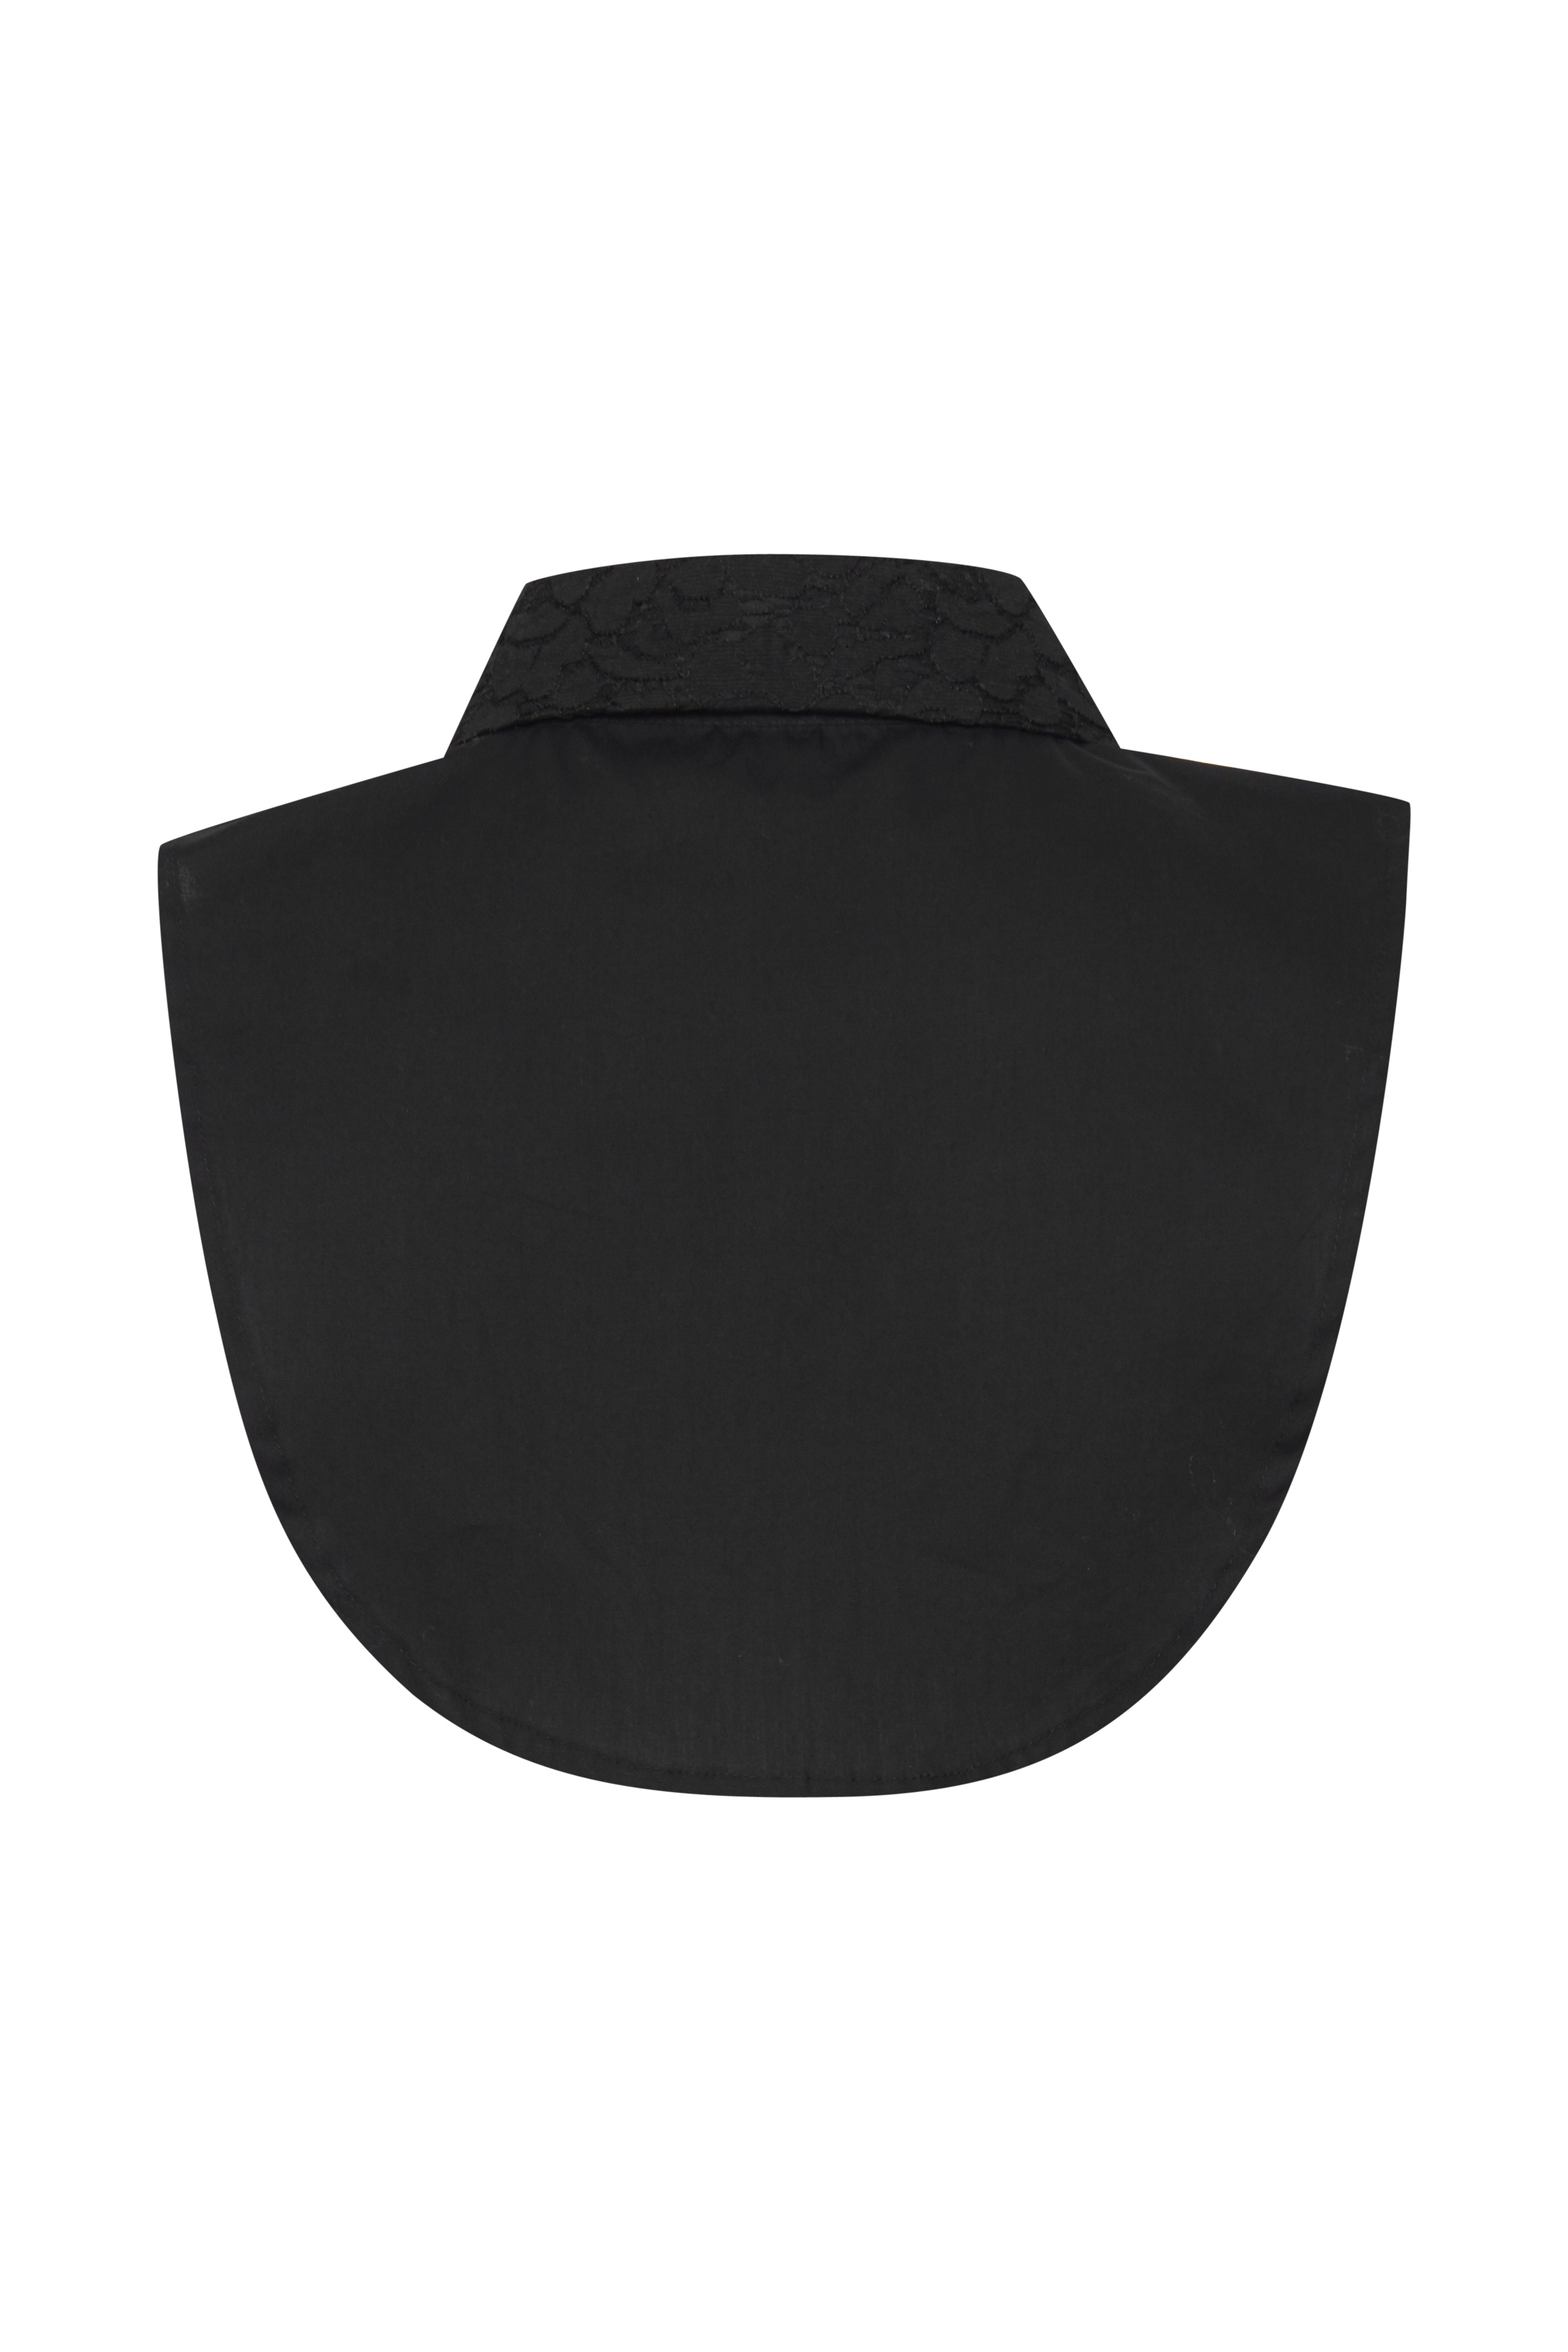  Shirt Collar, black, small/medium